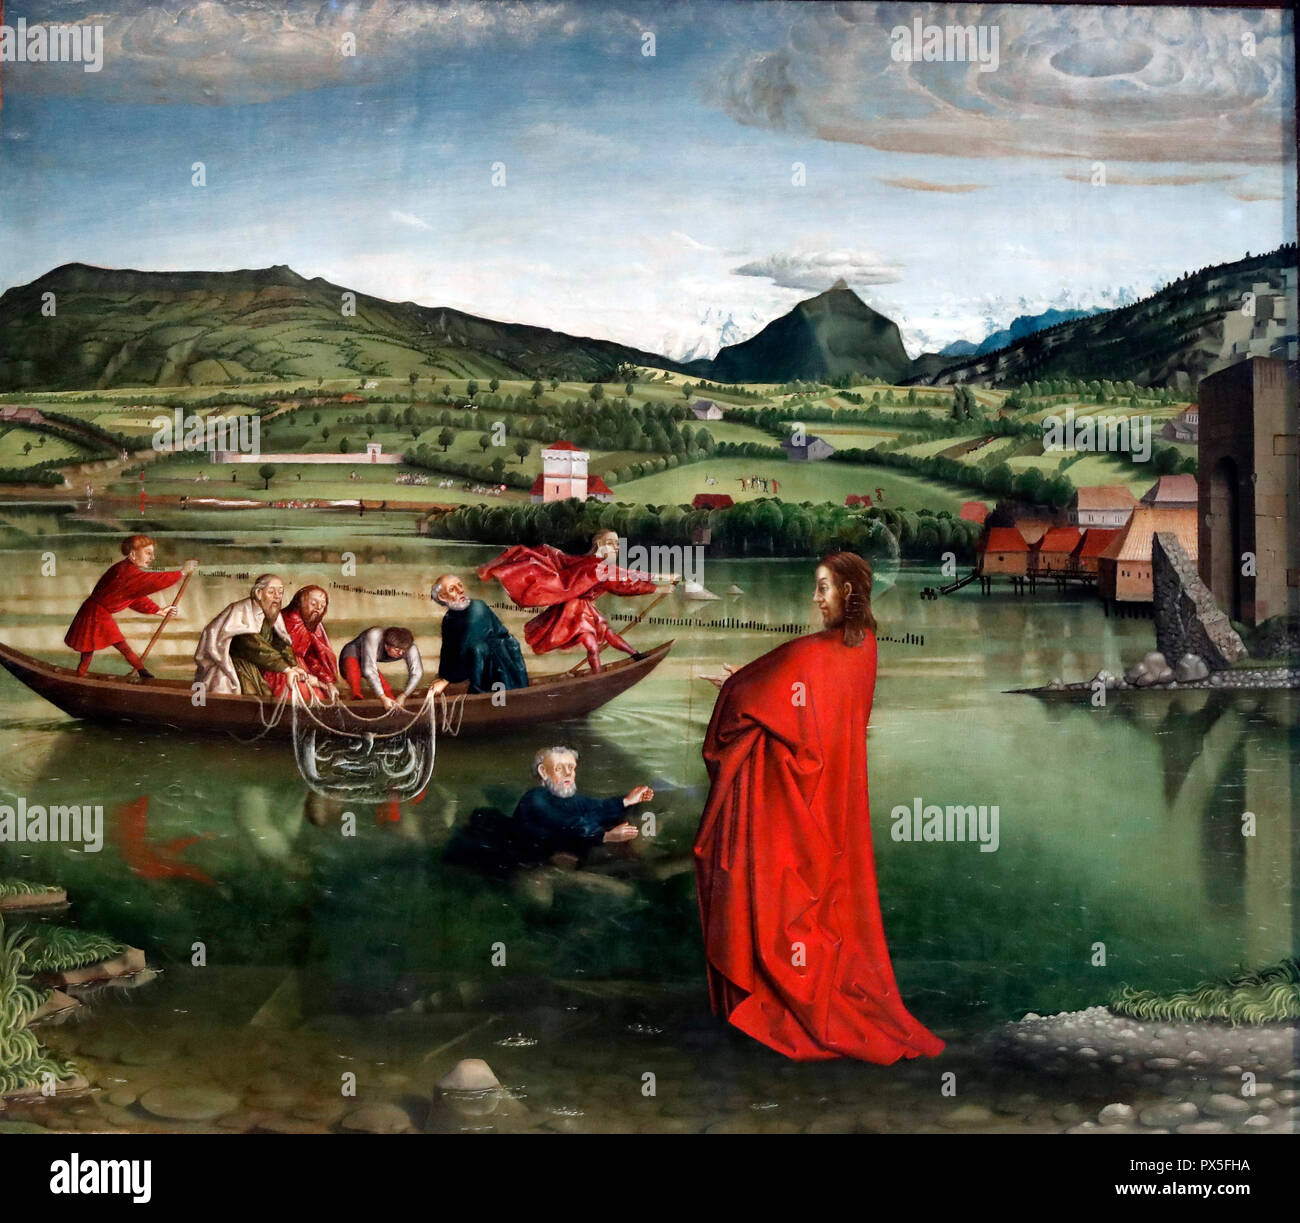 Museo de Arte e Historia. La peche miraculeuse ( la pesca milagrosa ). detalle. Konrad Witz. 1444. Ginebra. Suiza. Foto de stock